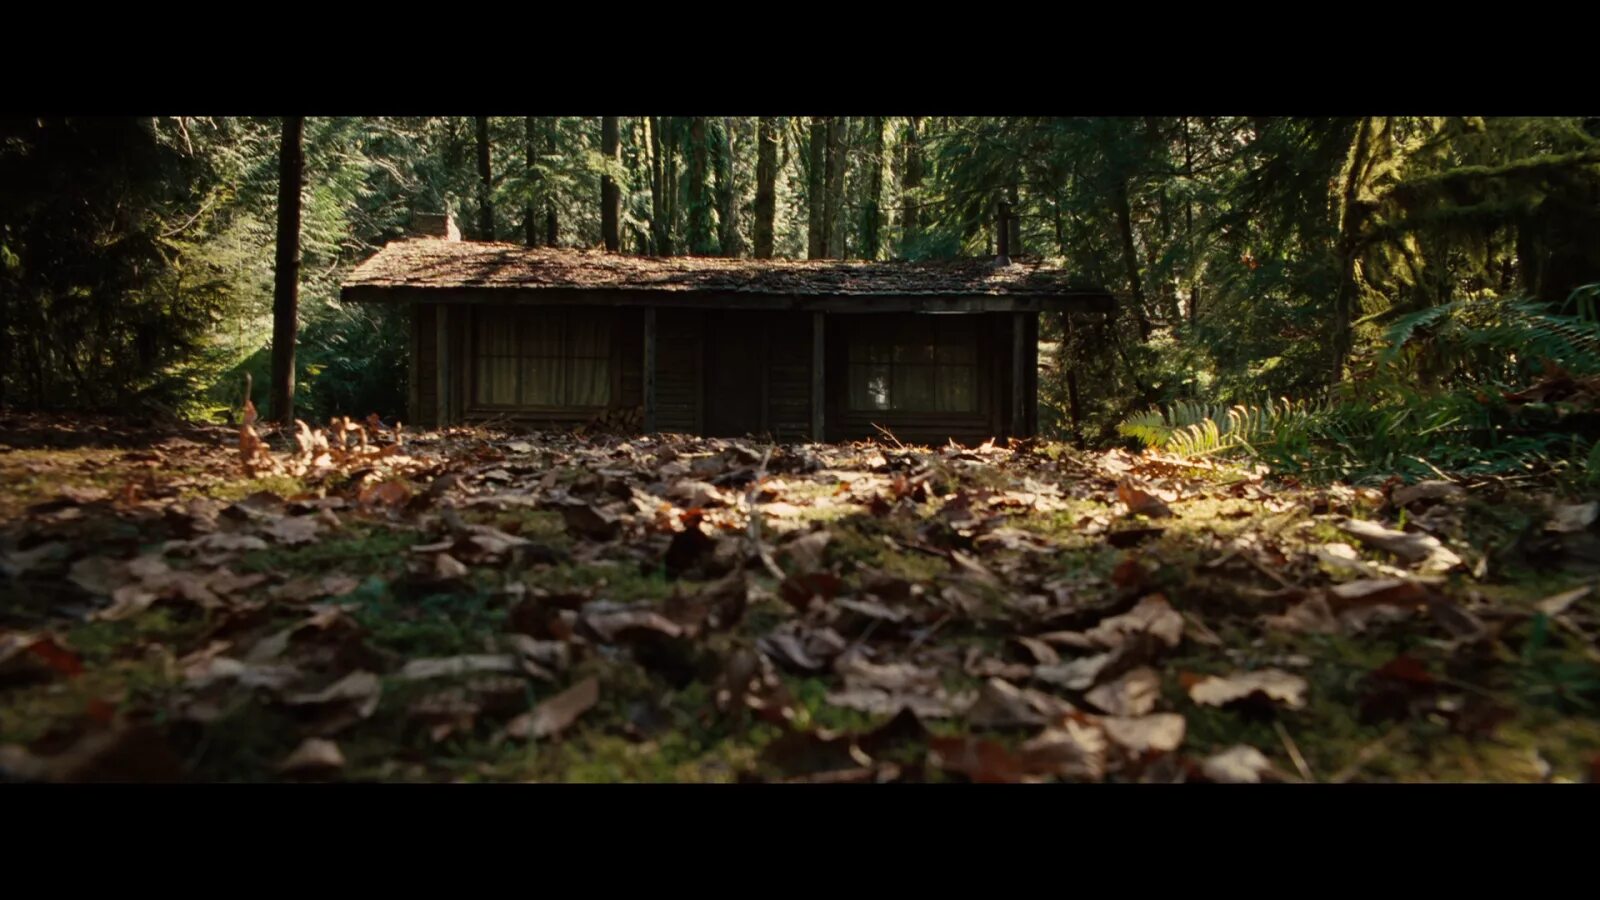 Хижина новая глава. Хижина в лесу (2012, реж. Д.Годдард). Брэдли Уитфорд Хижина в лесу. Хижина в лесу (Дрю Годдард, 2011).